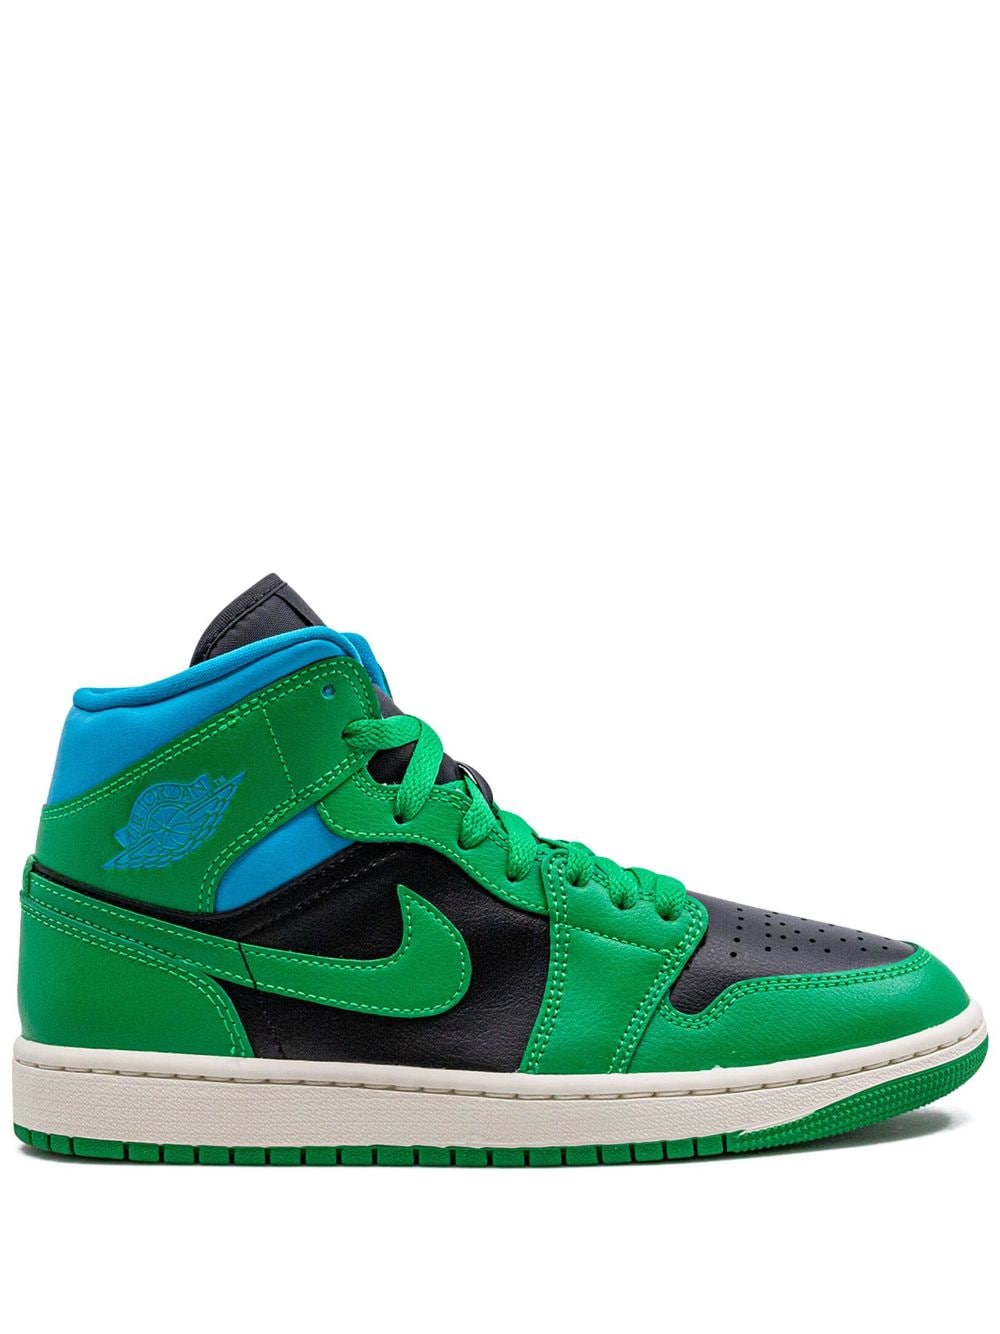 Jordan Air Jordan 1 Mid "Lucky Green/Aquatone" sneakers - Black